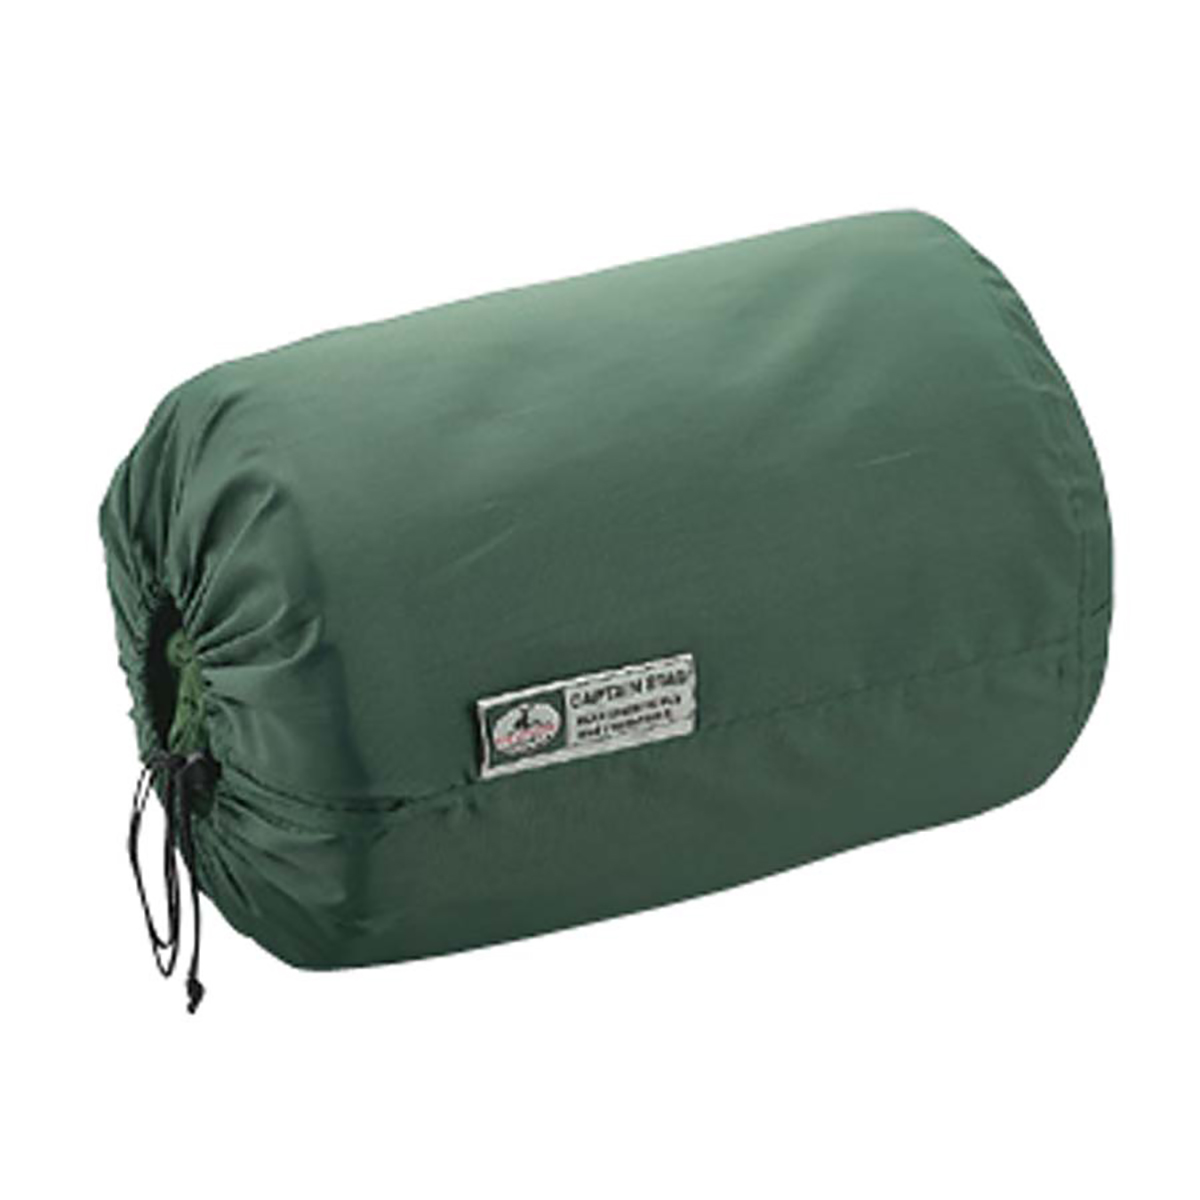 グランデ封筒型シュラフ(寝袋)1400(ピロー付)GR -キャプテンスタッグ公式オンラインストア